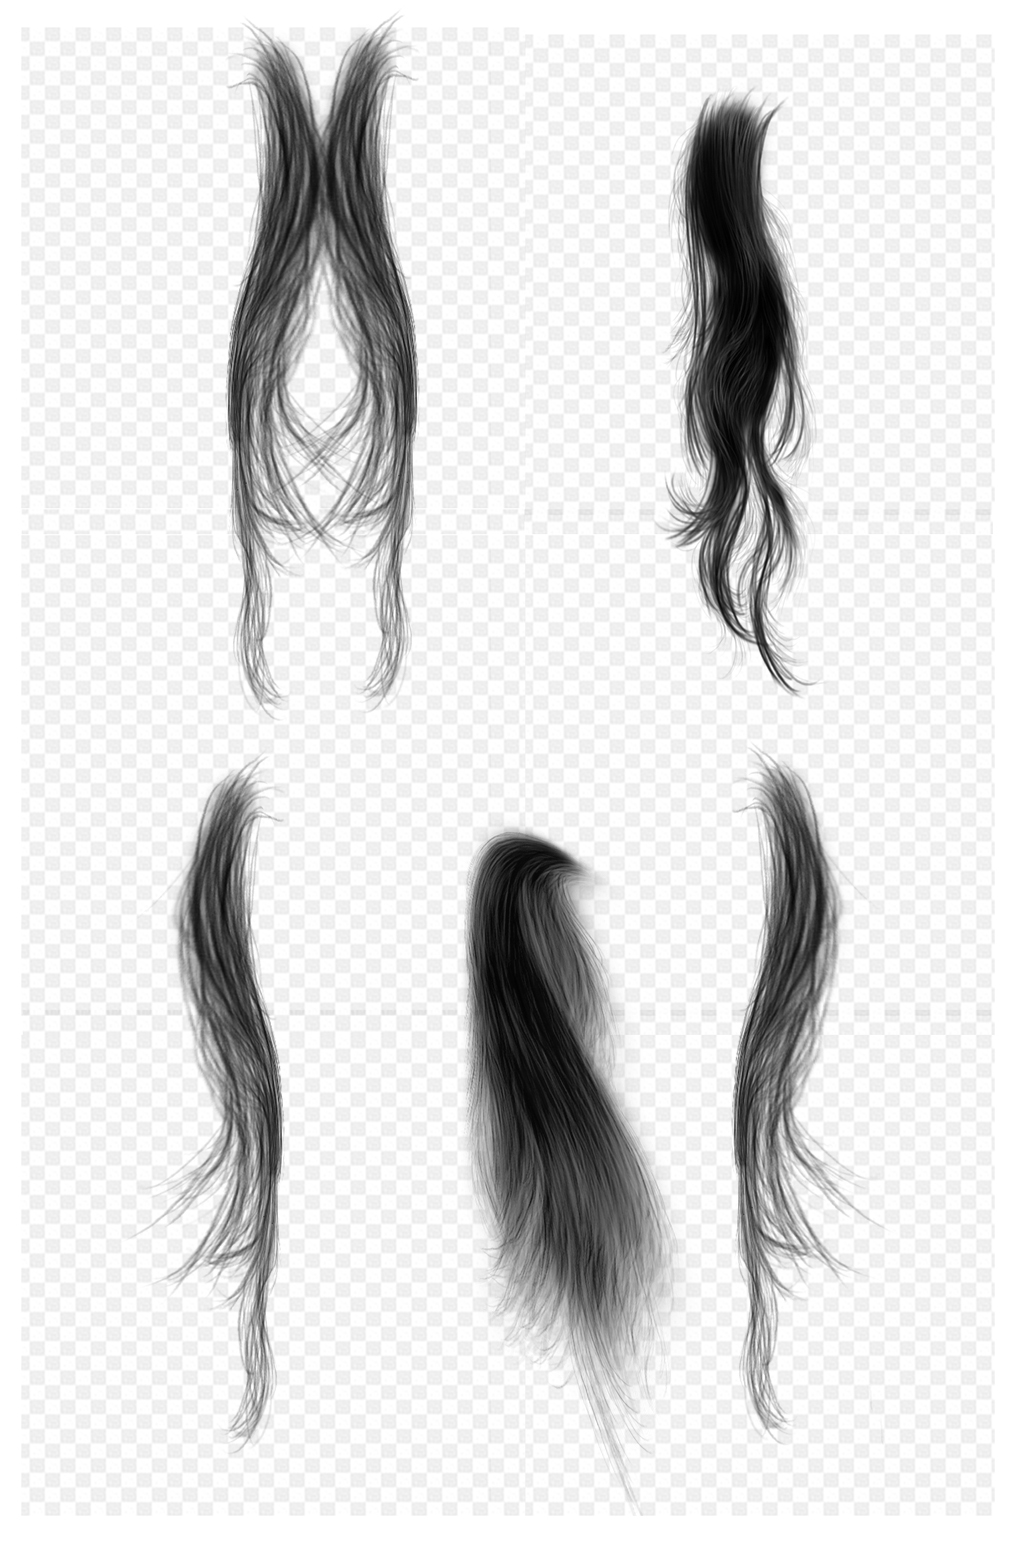 黑发长发发丝头发装饰免扣元素立即下载黑色头发头发素材立即下载头发